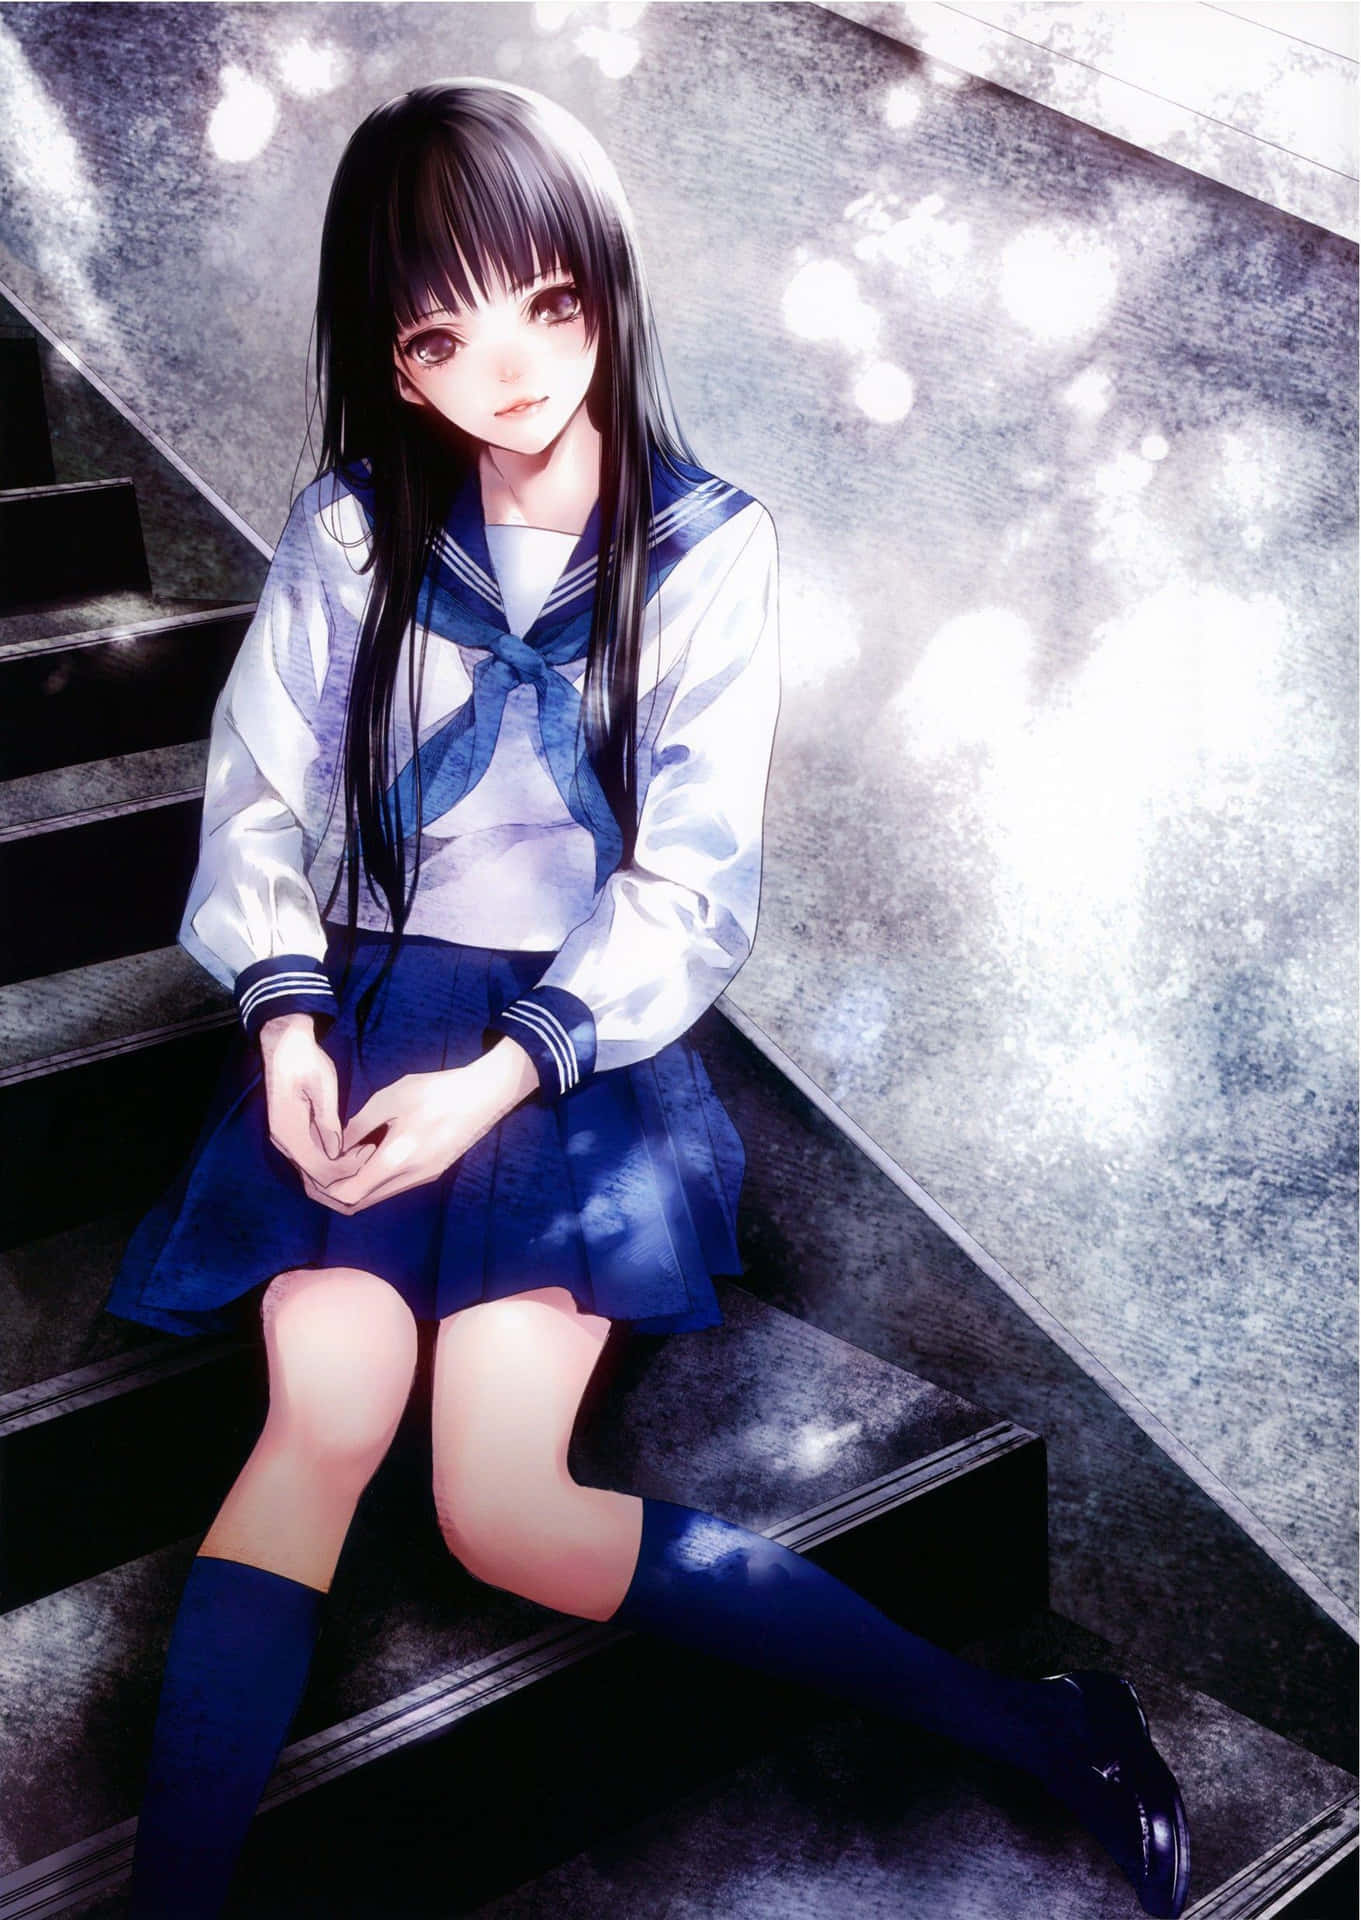 Japanese School Anime Girl Wallpaper